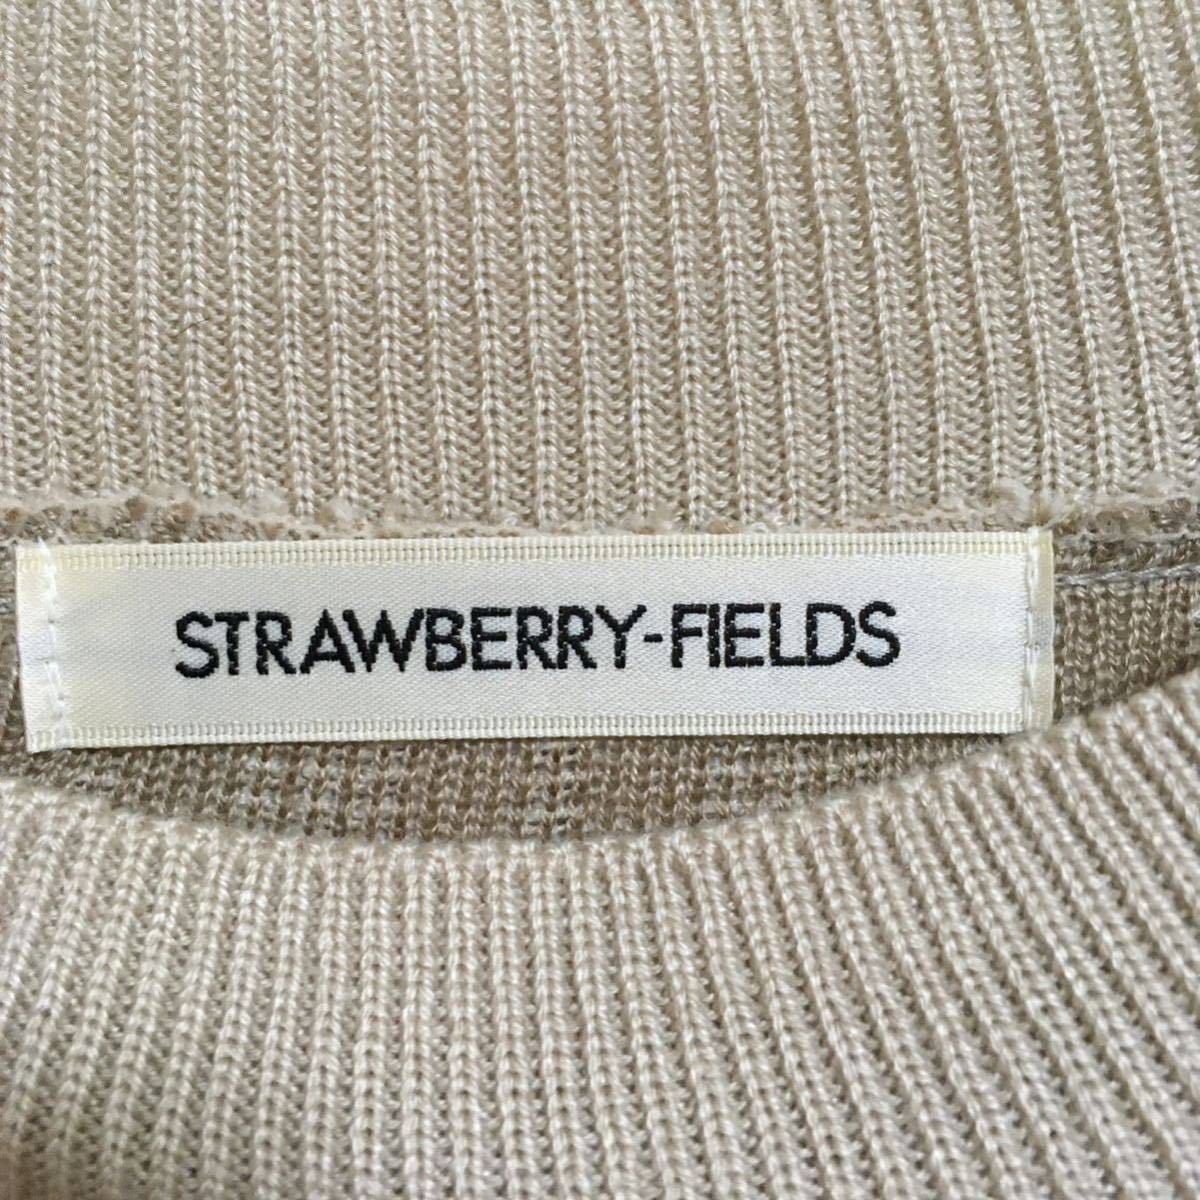  прекрасный товар *STRAWBERRY-FIELDS Strawberry Fields обычная цена 1.7 десять тысяч BGpa Trio to вязаный One-piece свободный размер бежевый женский сделано в Японии 